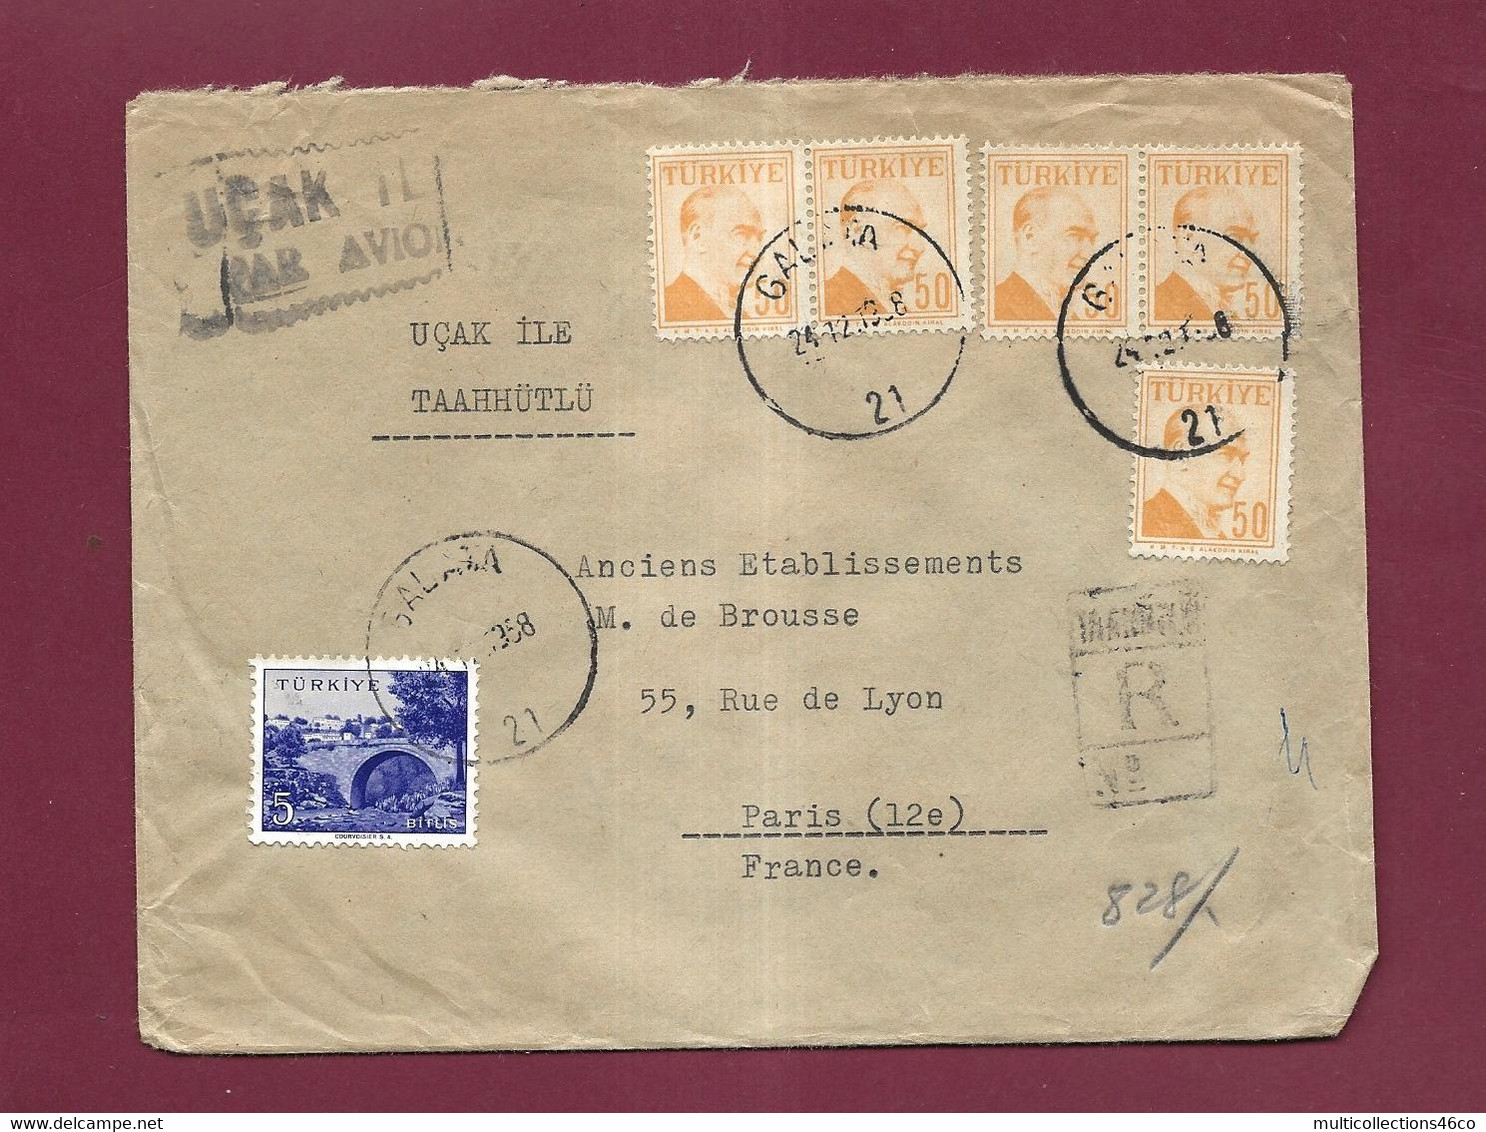 301121 - TURQUIE - Lettre Recommandée Affranchie Oblitérée GALATA  Pour La France  1958 - Briefe U. Dokumente